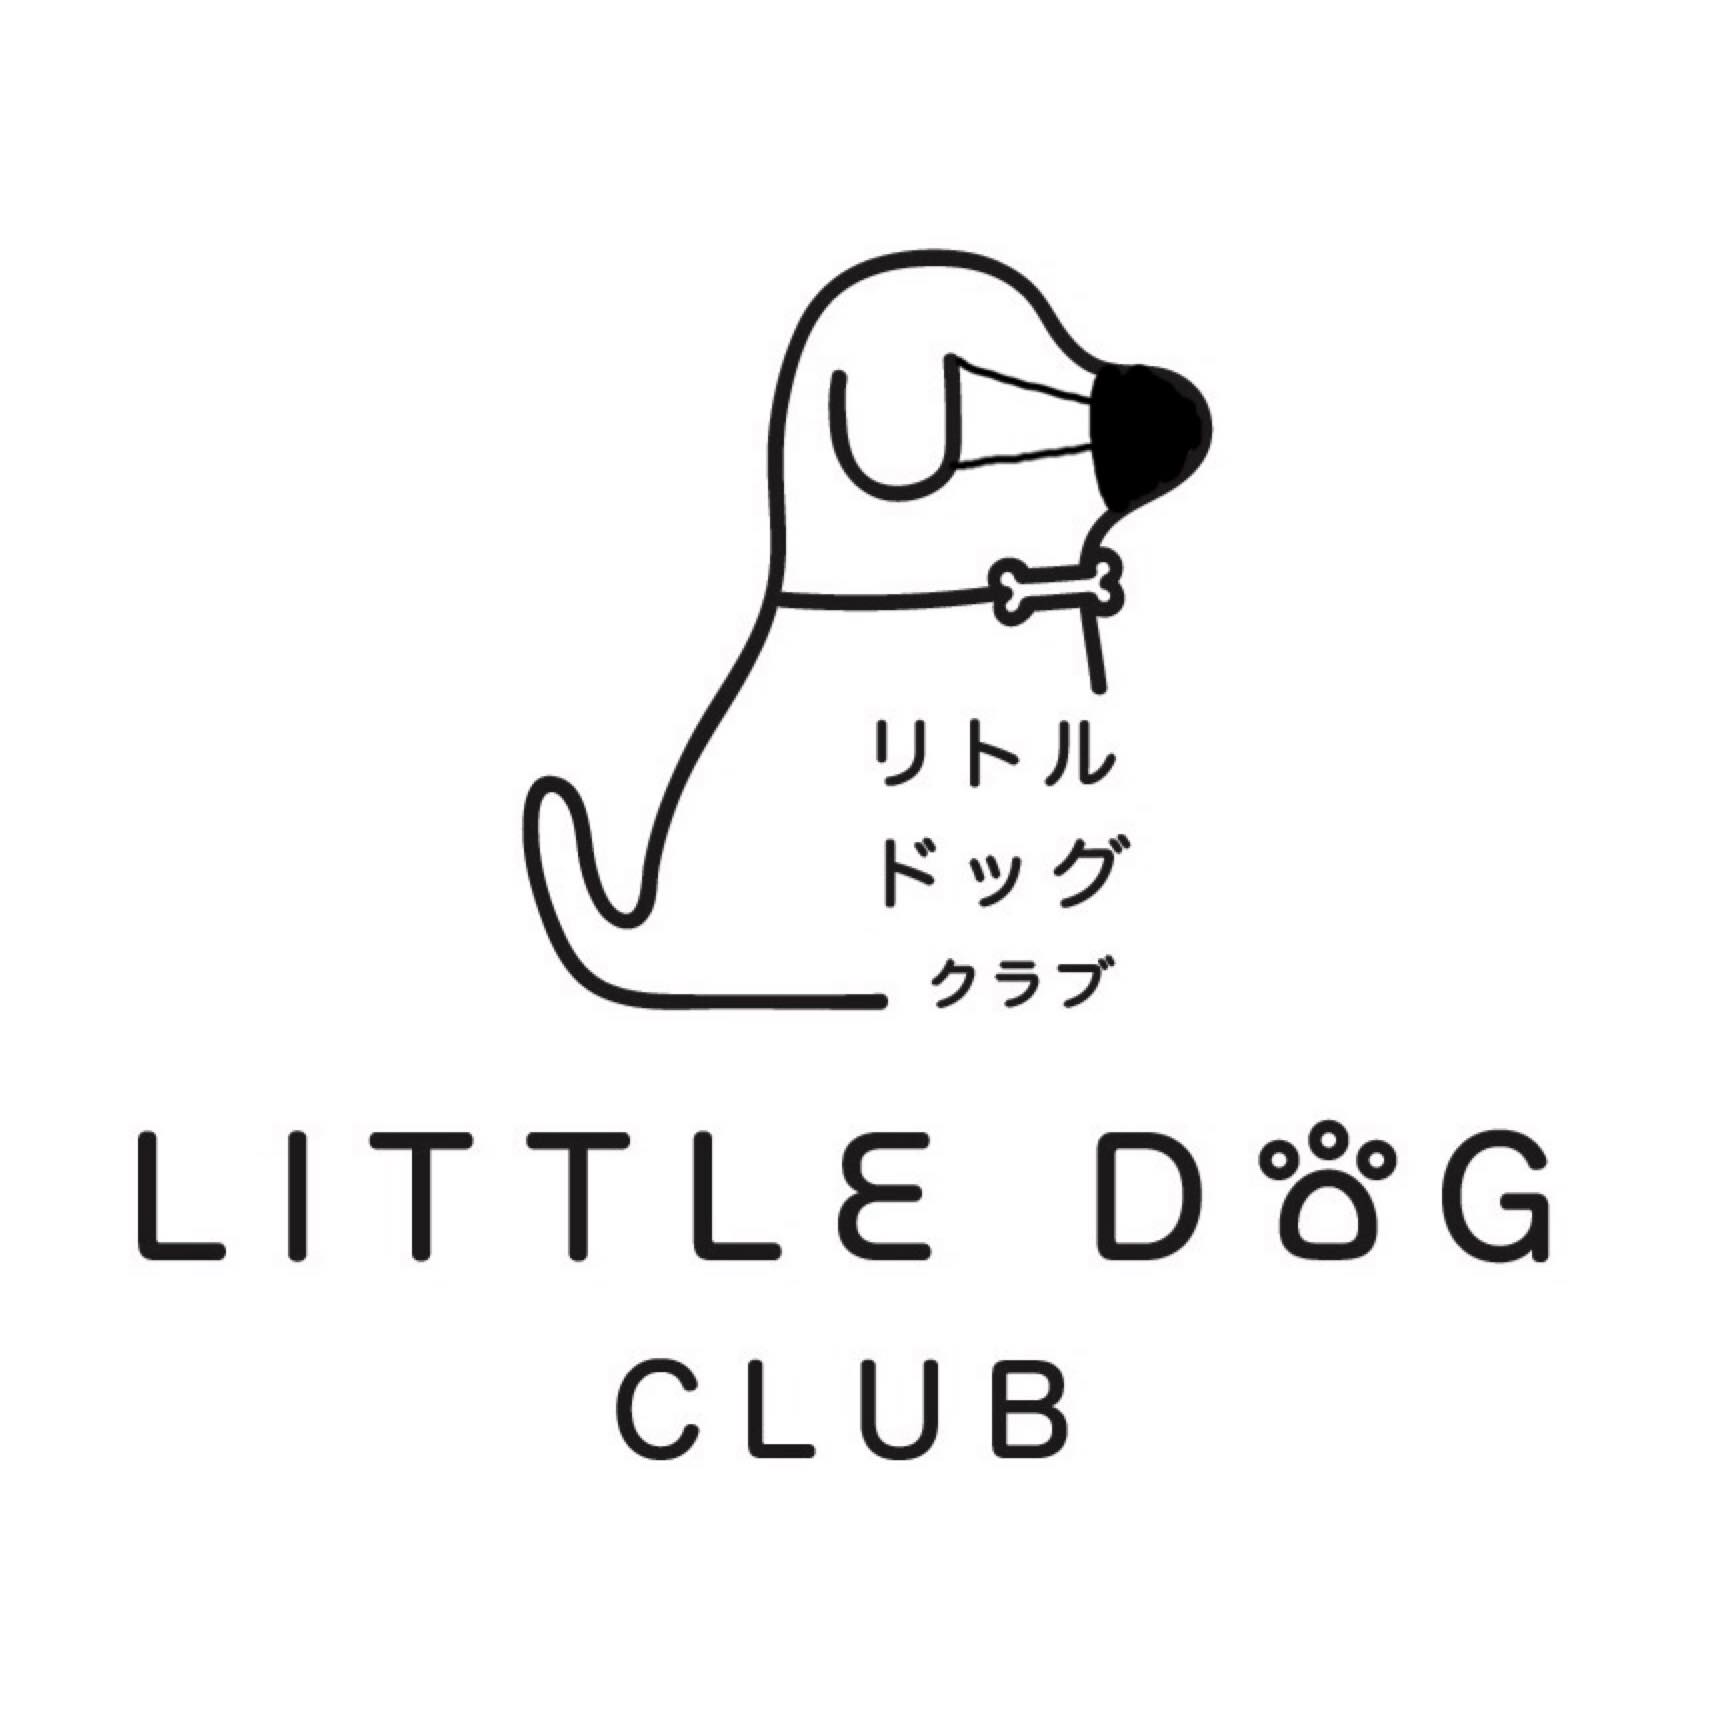 Dogilike.com :: Little Dog Club ╓рЮ©Х╧Им╖кар╣ягЮеГ║А╧гат╧таме !!